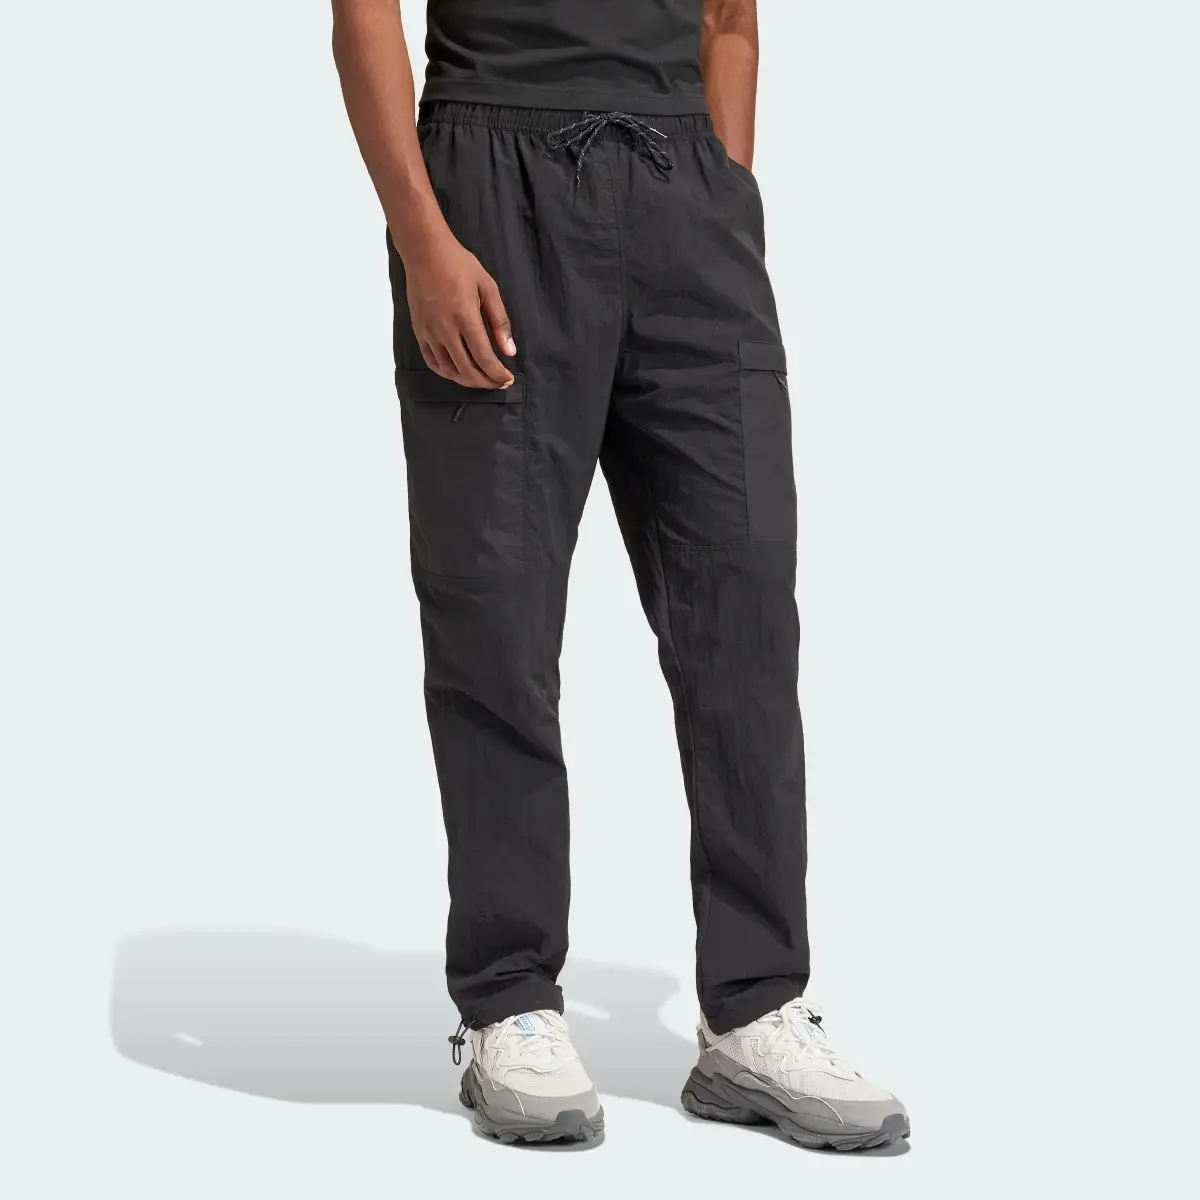 Adidas Pantaloni Cargo. 2